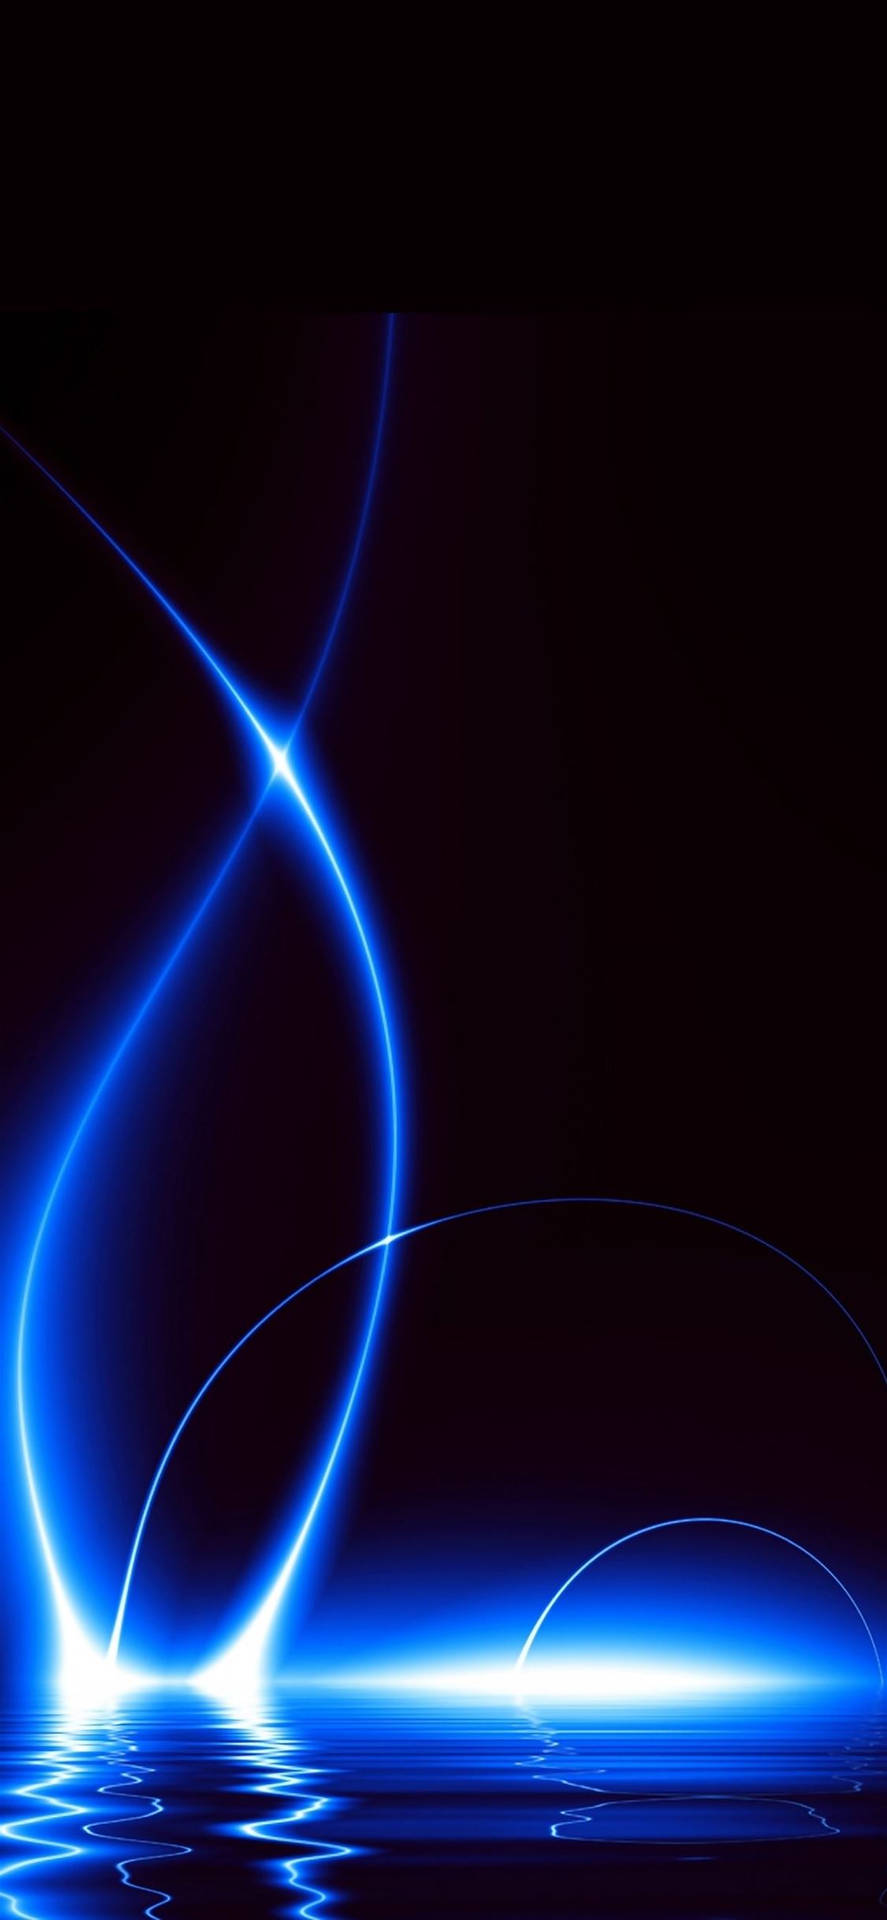 Fondode Pantalla Oscuro Del Iphone Con Luz Azul. Fondo de pantalla